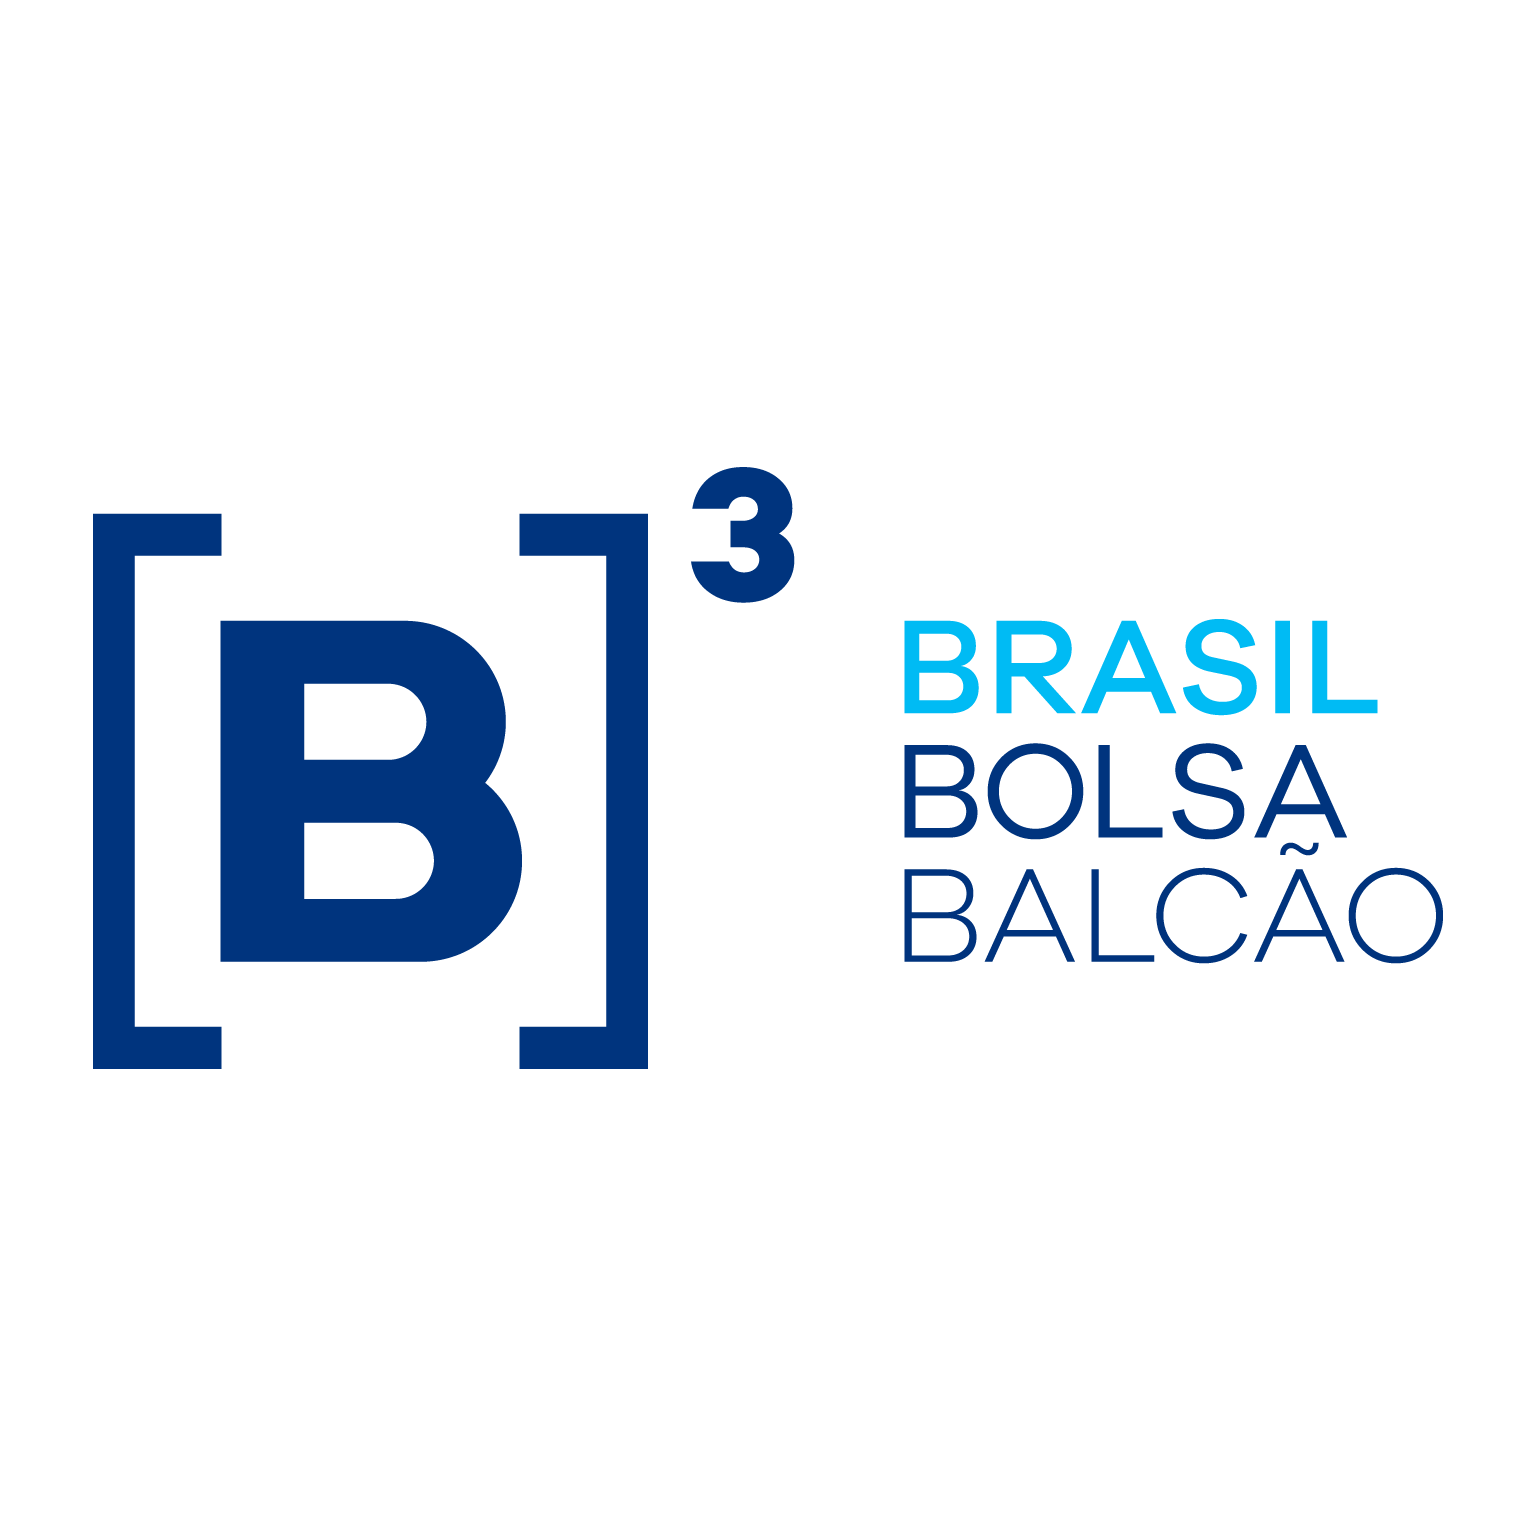 escudo b3 brasil bolsa balcao